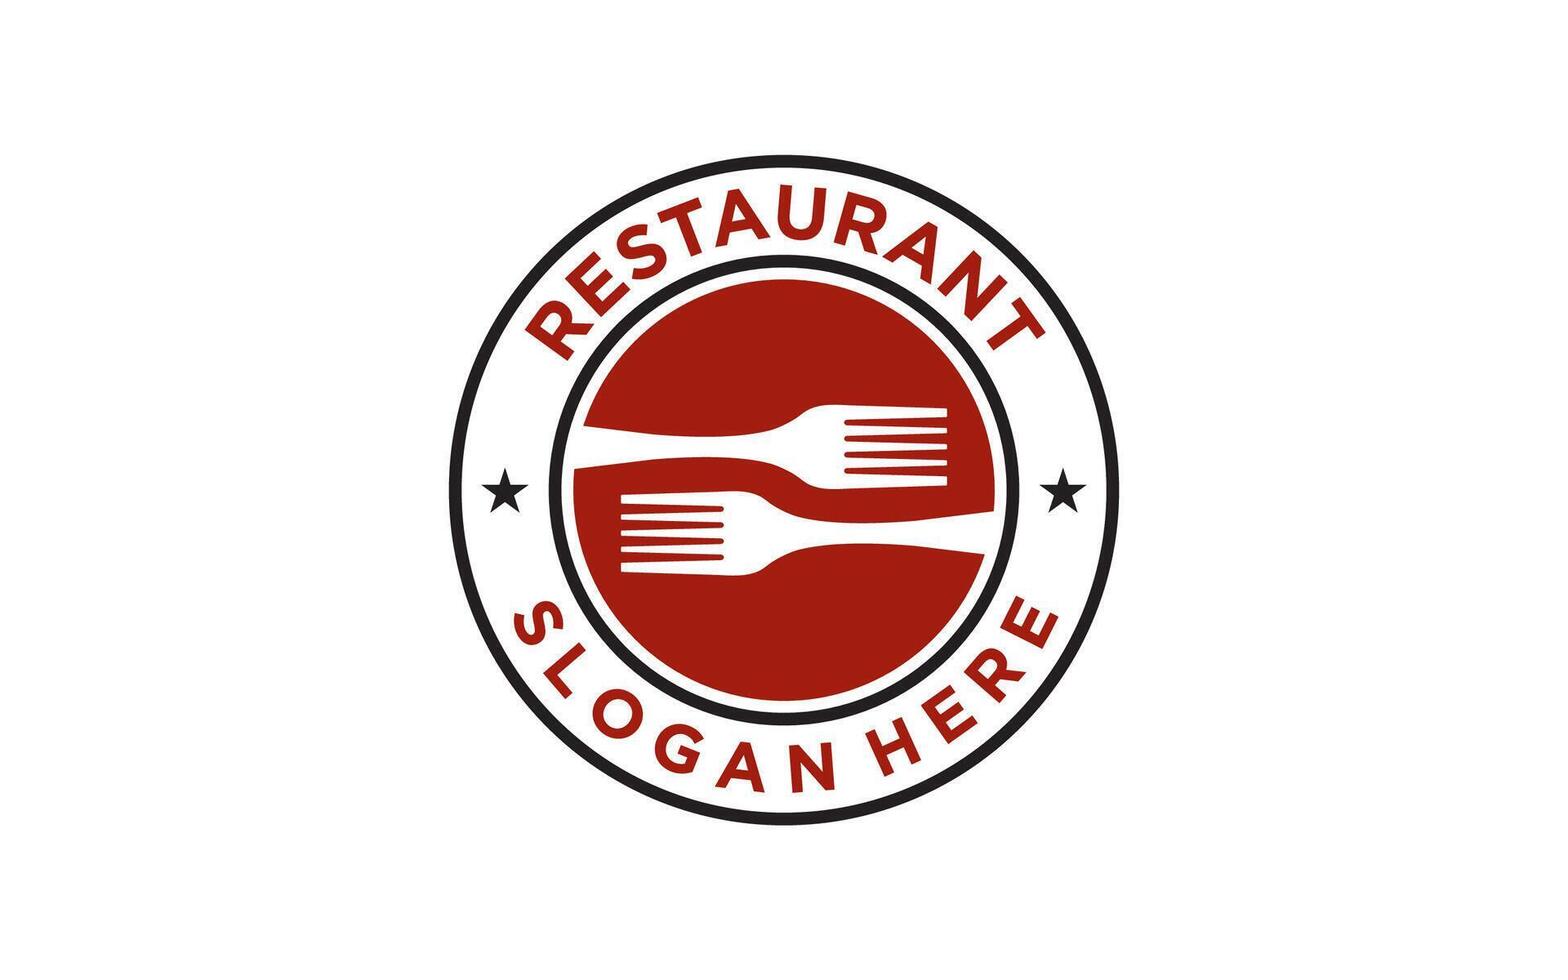 Clásico restaurante logo. restaurante insignia, póster con tenedor. vector emblema modelo